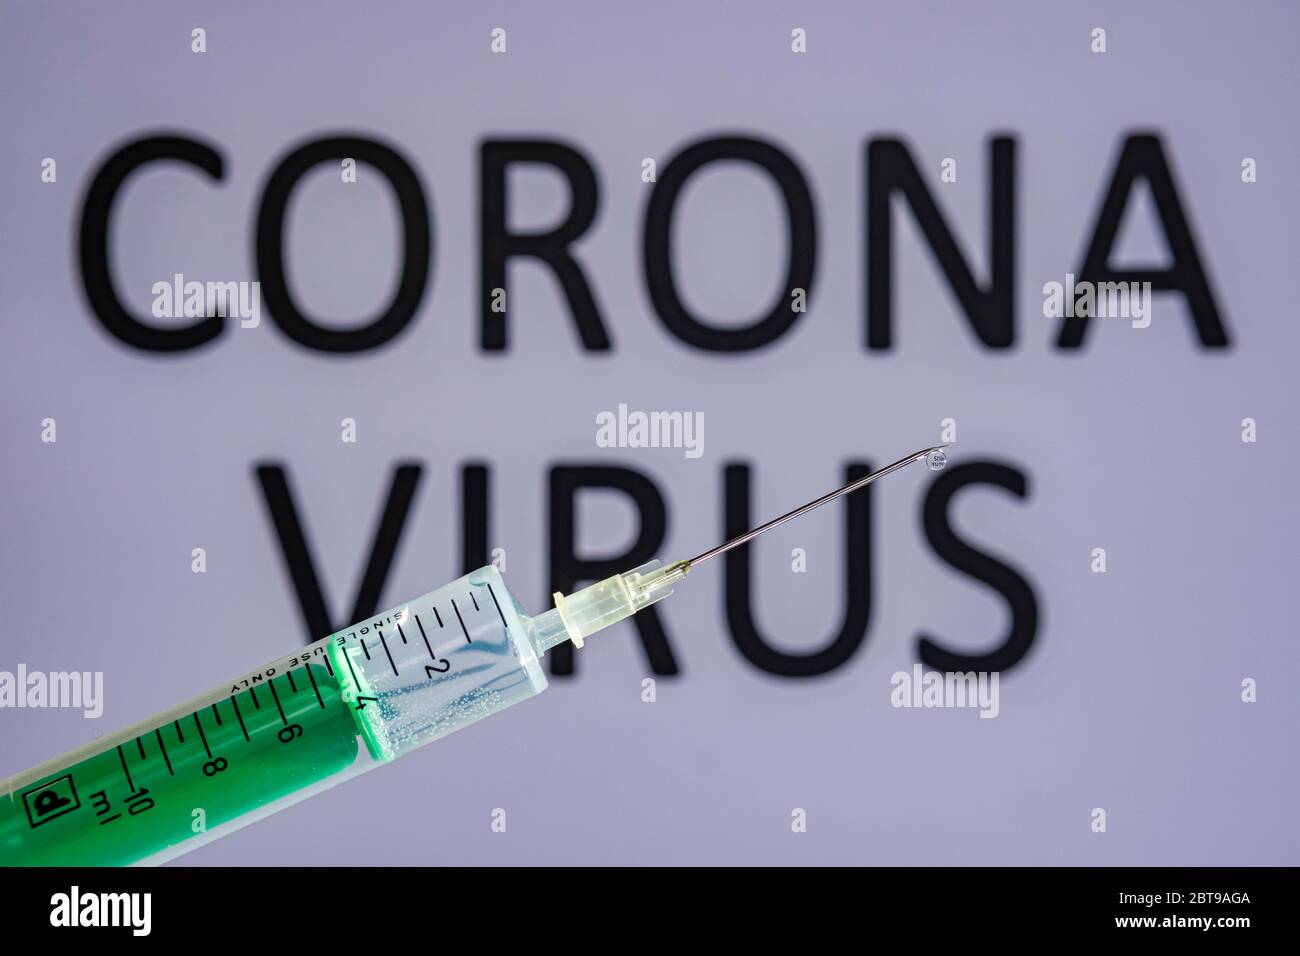 Questa illustrazione mostra una siringa monouso con ago ipodermico, IL VIRUS CORONA scritto su una tavola grigia dietro Foto Stock